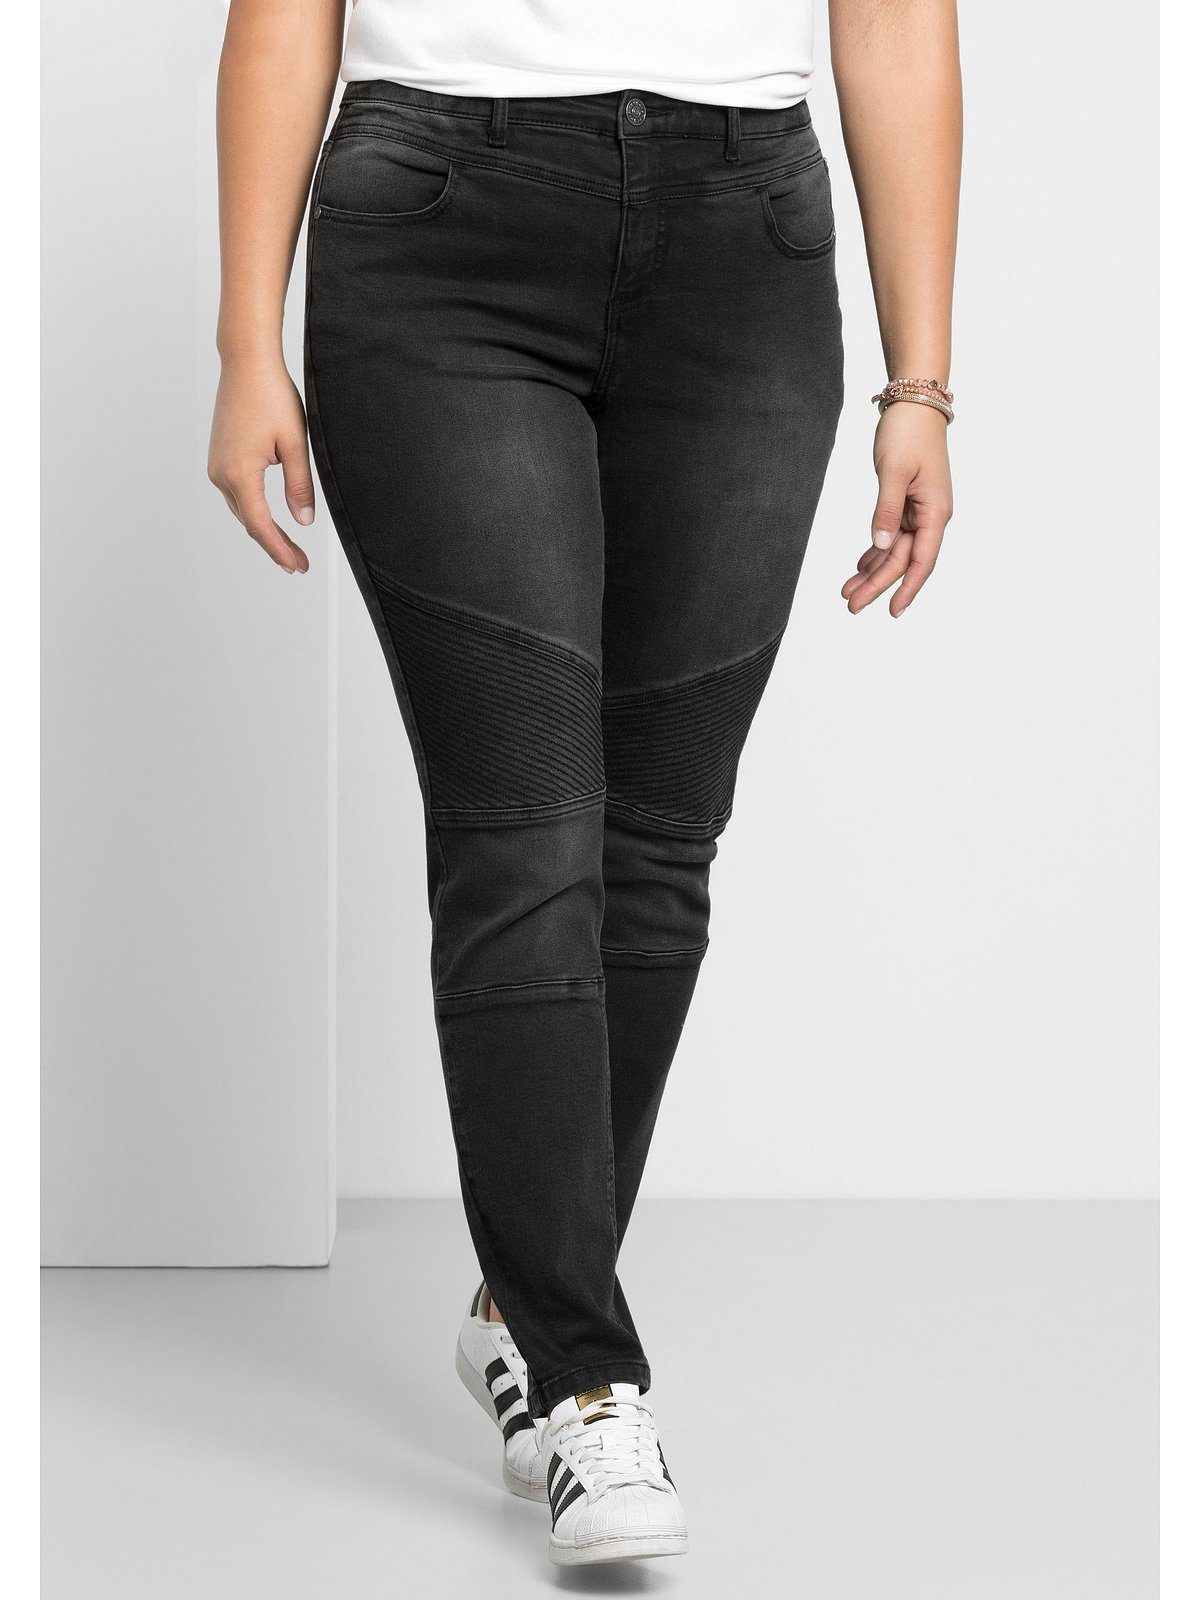 black Stretch-Jeans Sheego Große Power-Stretch-Qualität Größen Denim